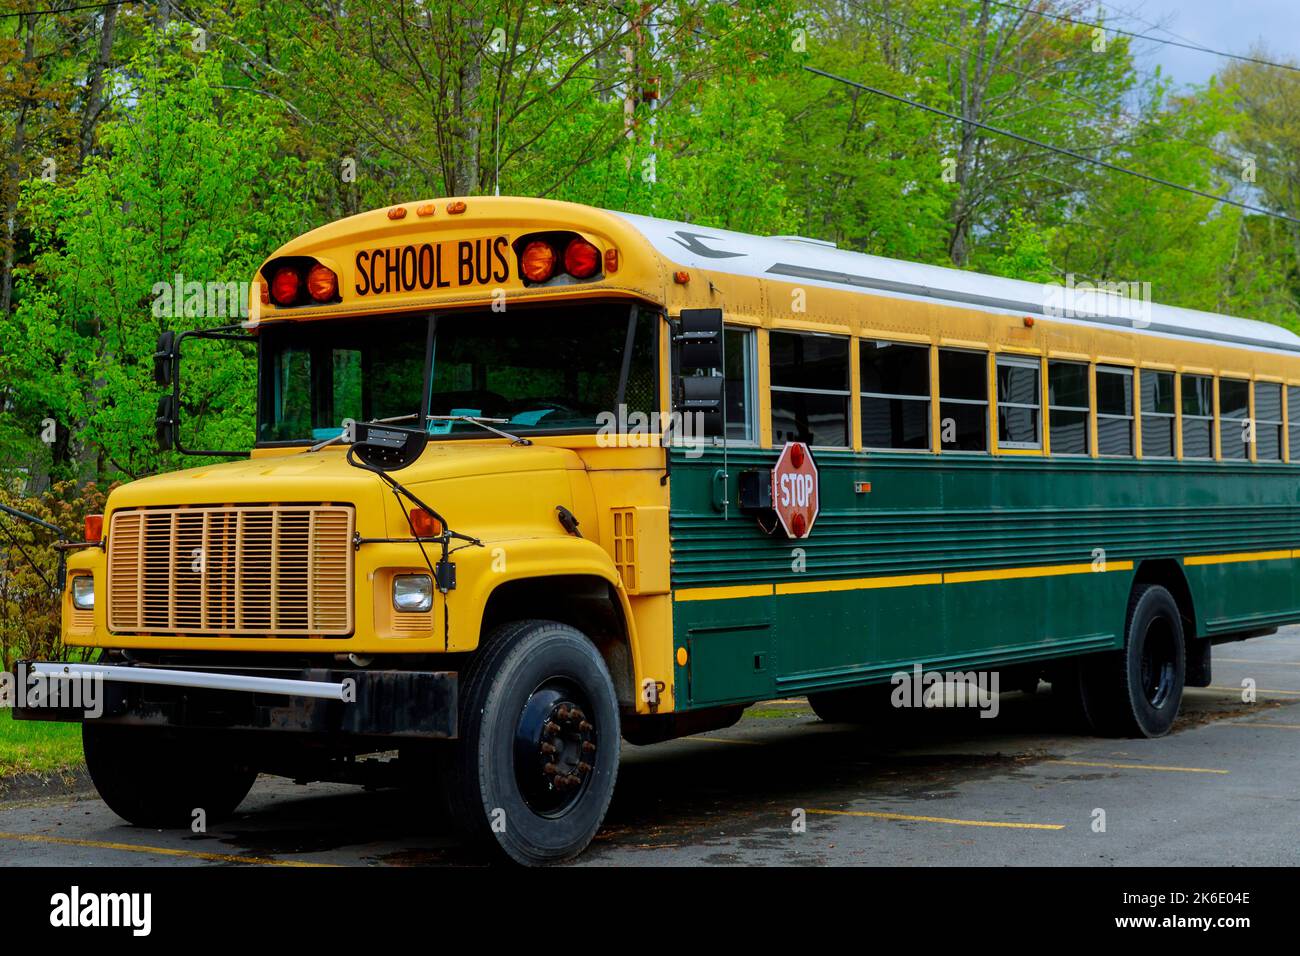 Der traditionelle Schulbus auf der Straße bringt die Kinder täglich zur Schule. Stockfoto